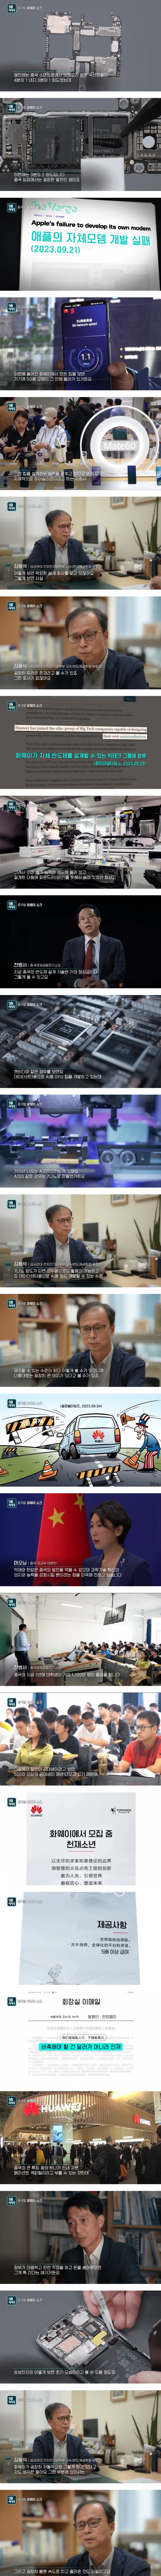 한국의 전문가들이 평가하는 중국 화웨이